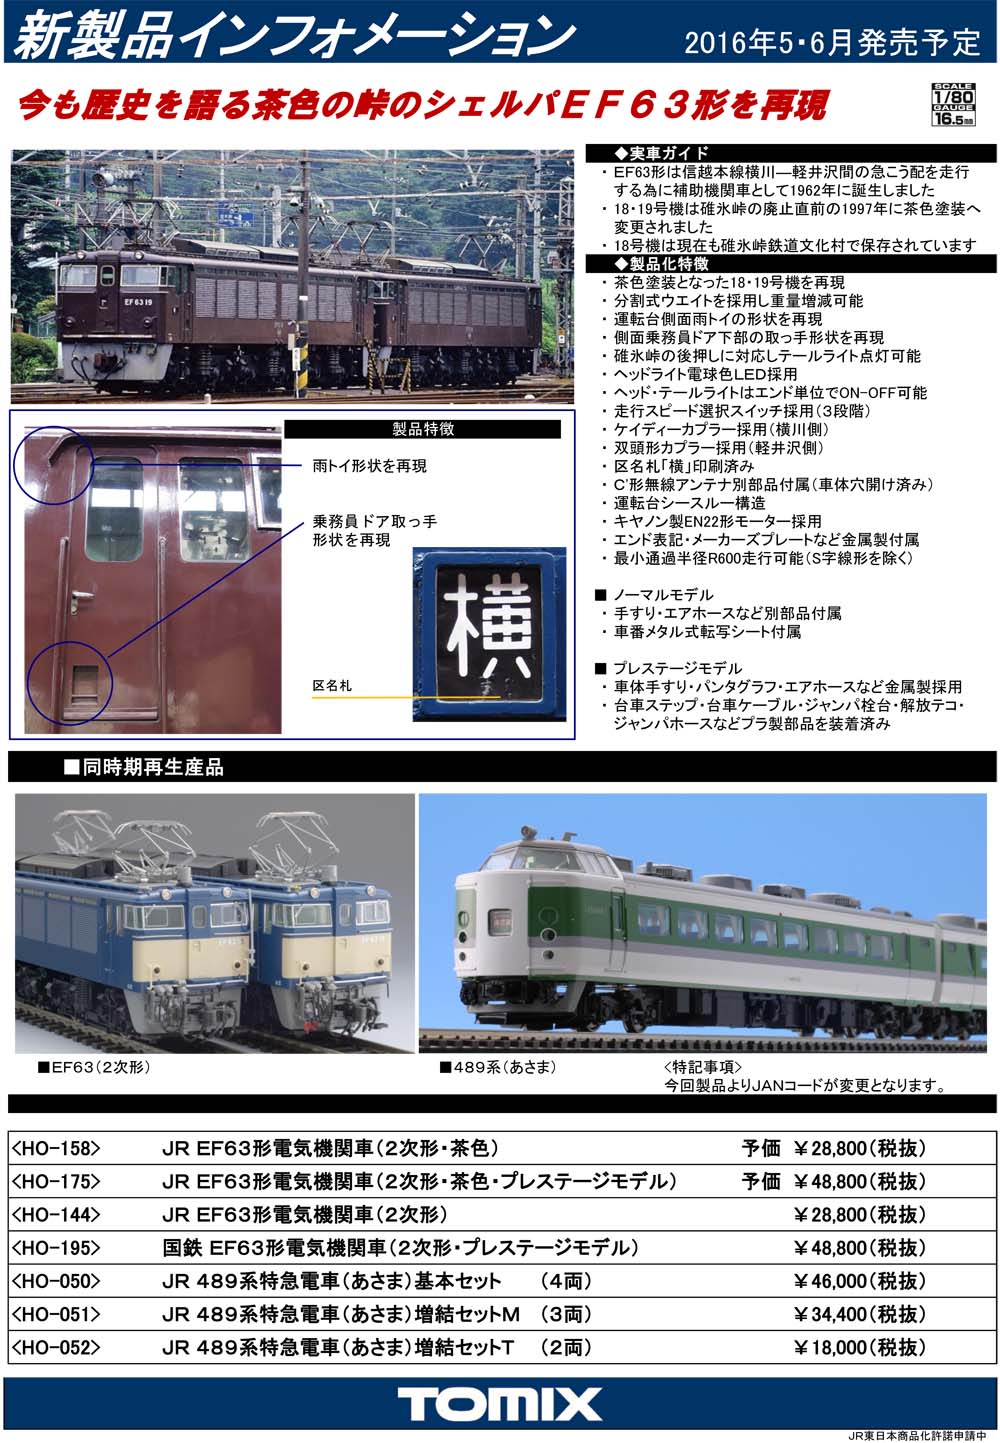 110110-3号店TOMIX HOゲージ EF63 1次形 プレステージモデル HO-199 鉄道模型 電気機関車 鉄道模型 